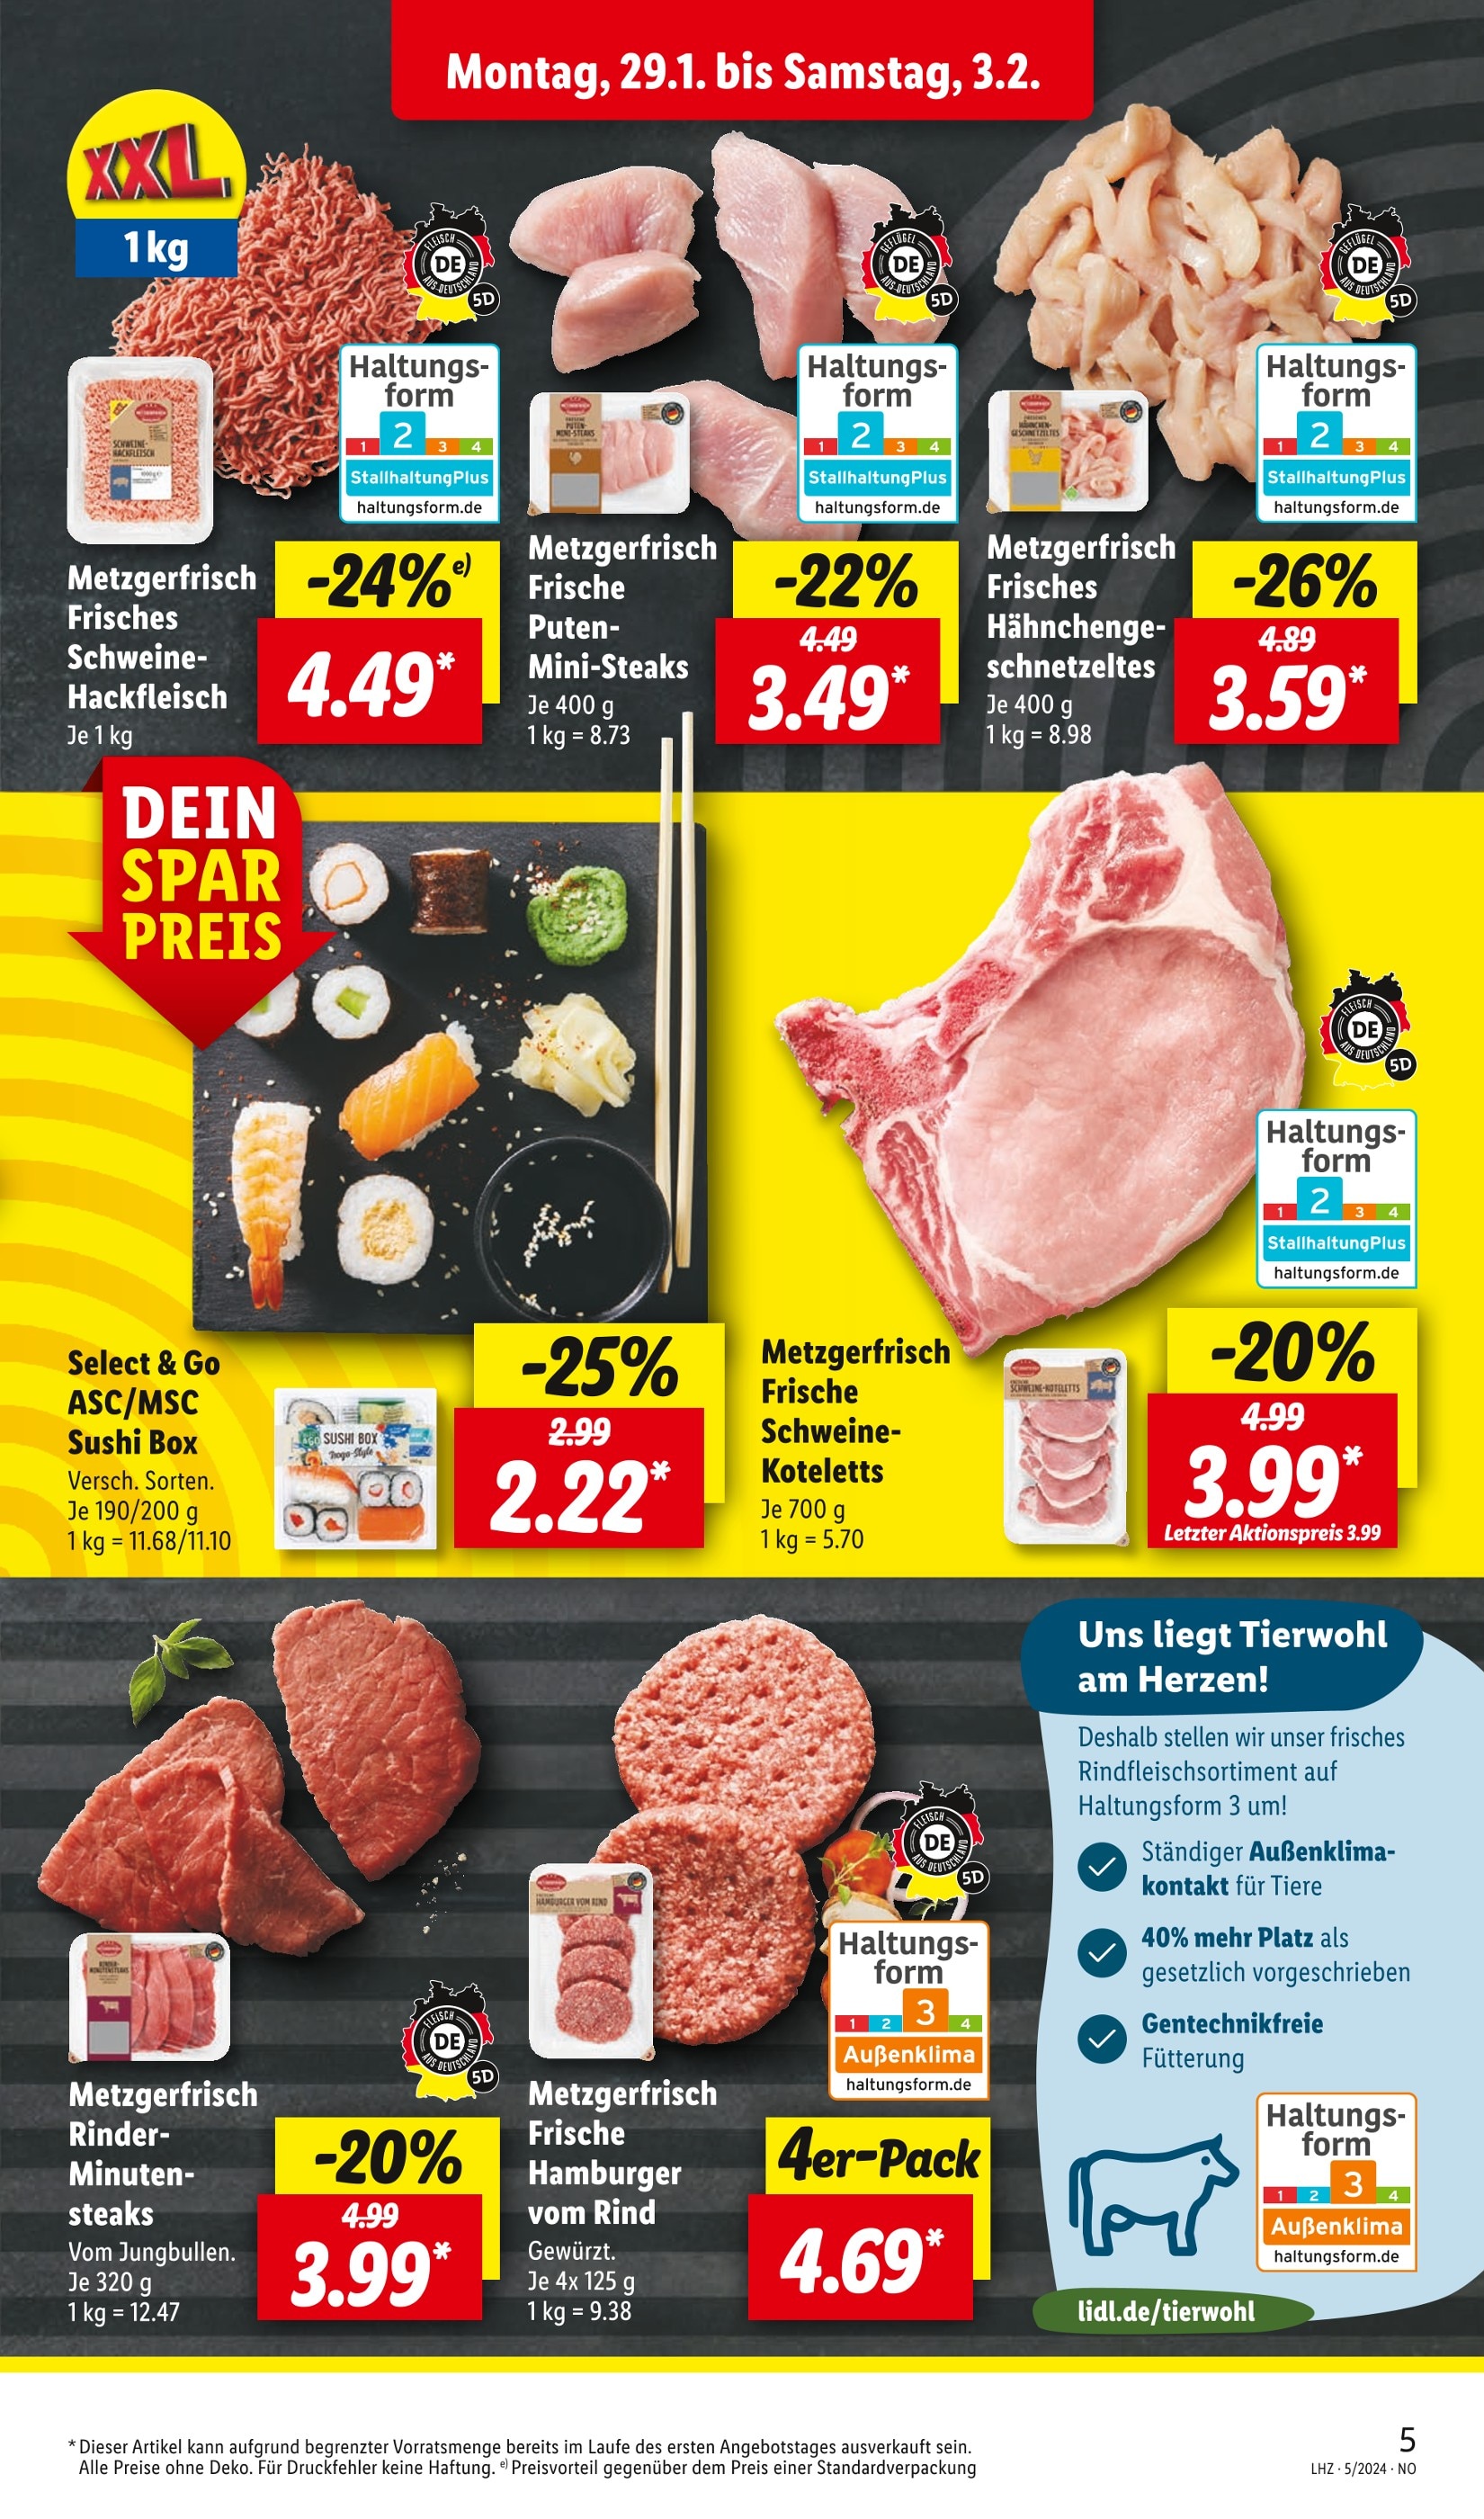 Fleisch kaufen in Cuxhaven - günstige Angebote in Cuxhaven